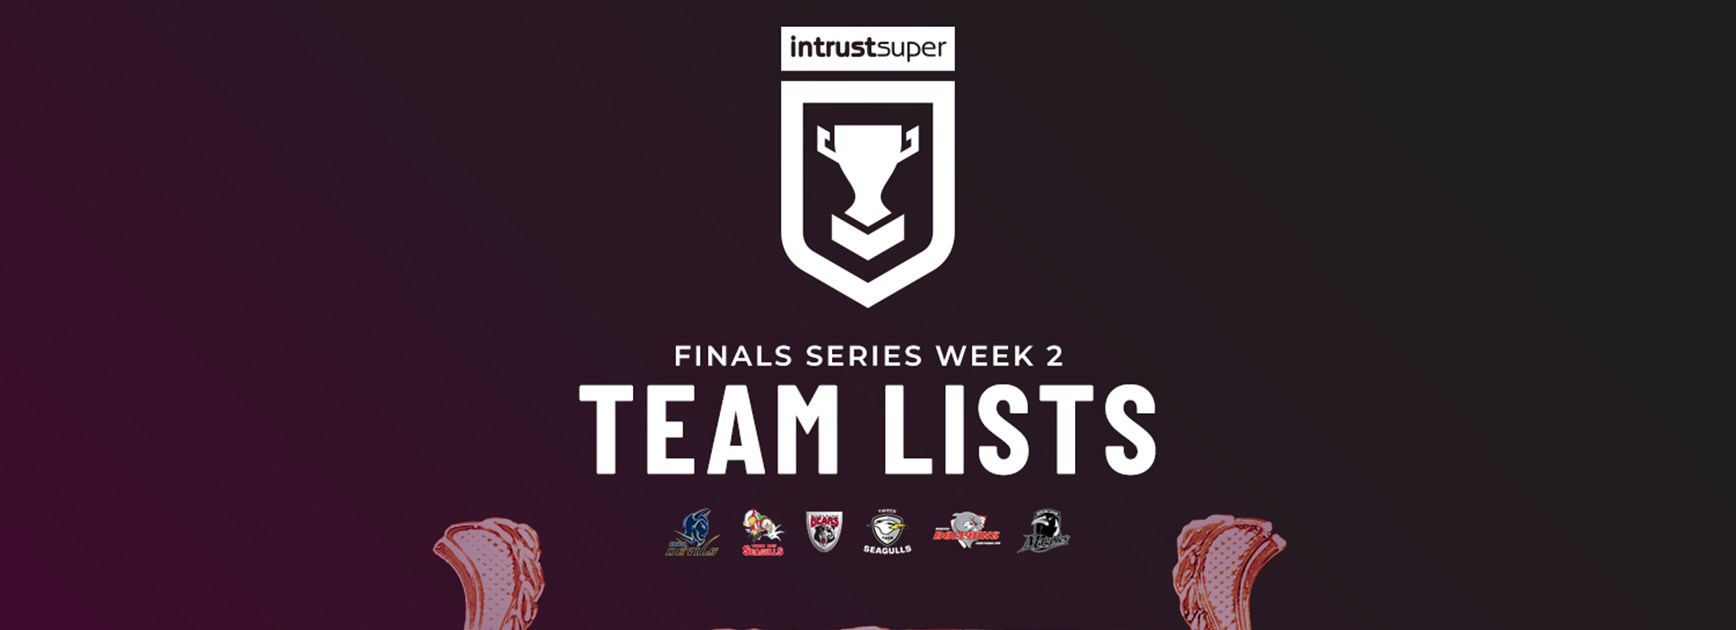 Intrust Super Cup Finals Week 2 team lists